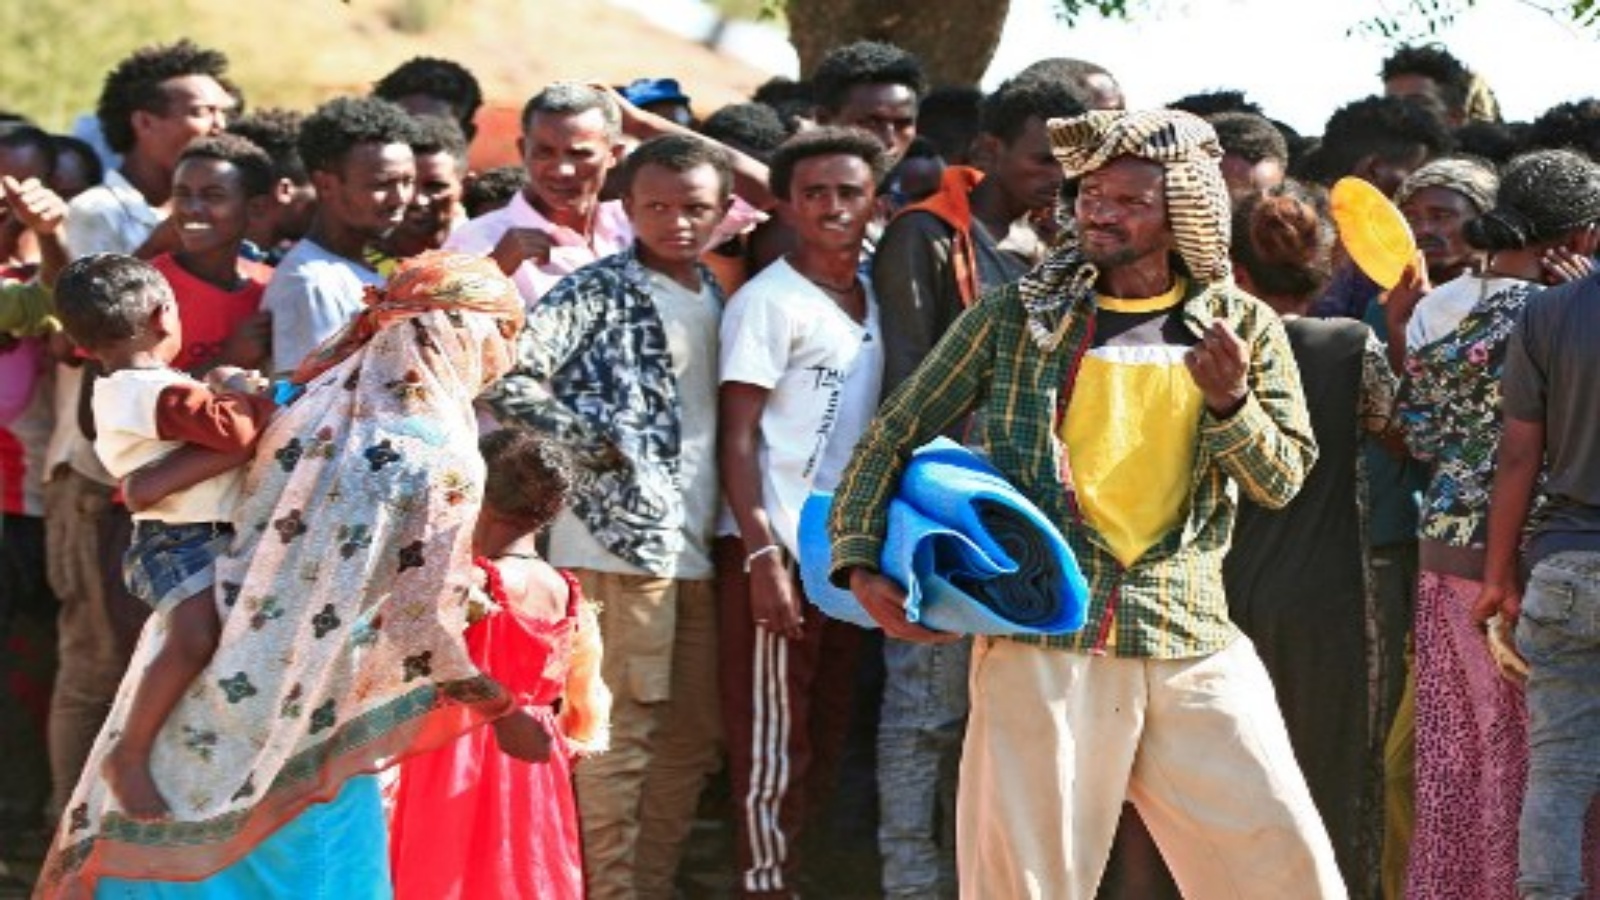 لاجئون إثيوبيون ، فروا من القتال العنيف في وطنهم ، يتجمعون في مخيم أم ركبة ببلدة القضارف شرقي الخرطوم ، في 15 نوفمبر 2020 ، بعد نقلهم من مركز الاستقبال الحدودي.